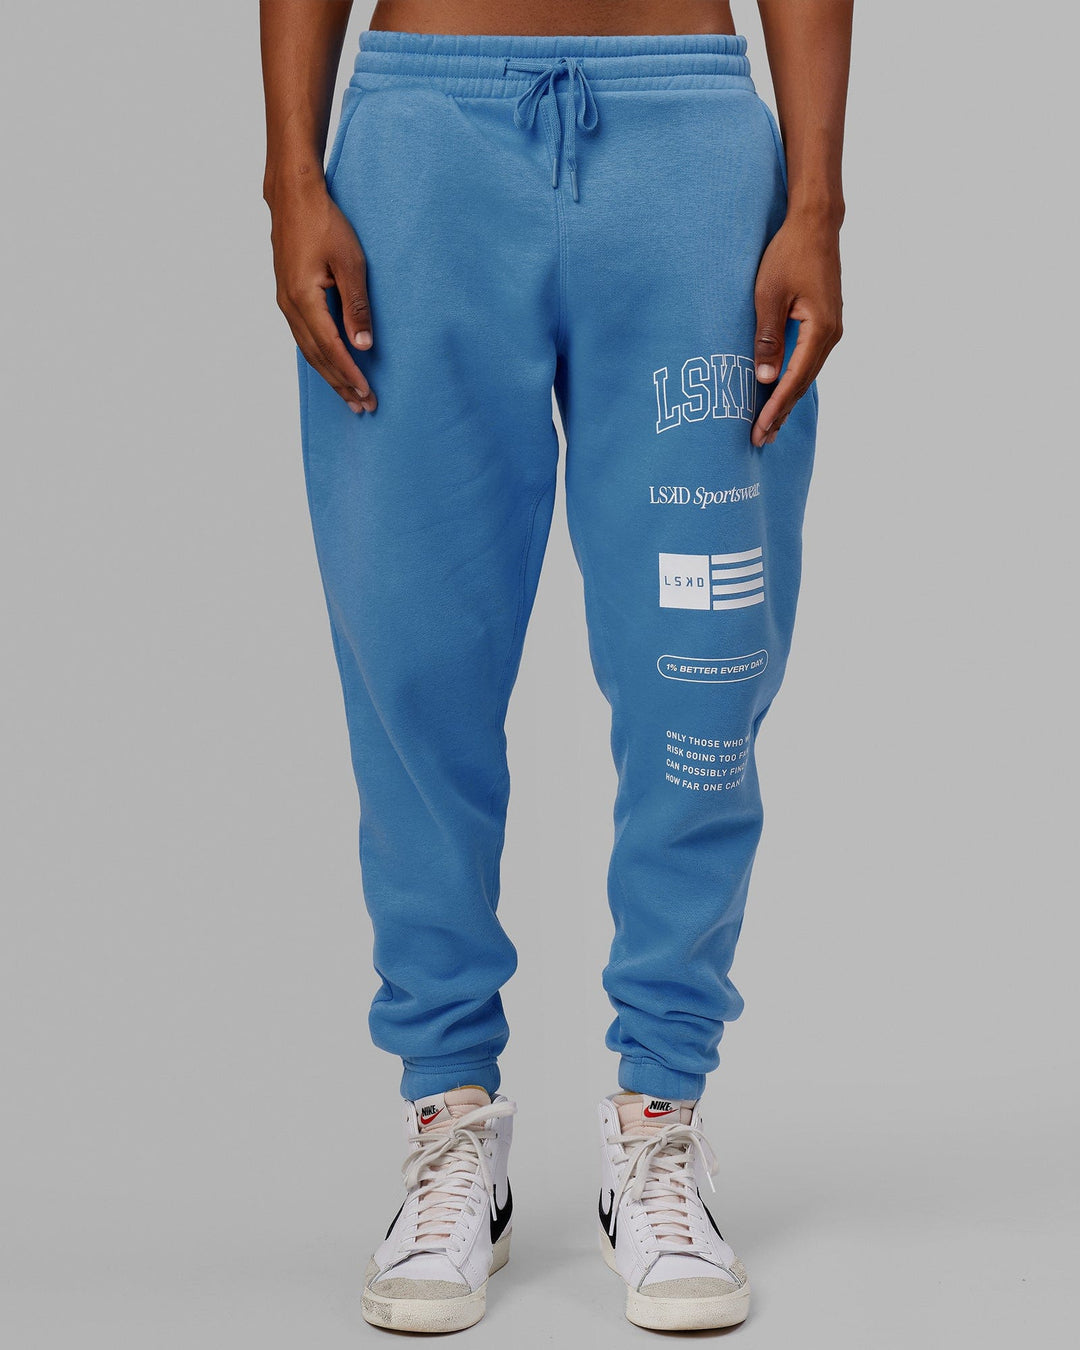 Man wearing Unisex Academy Track Pant - Azure Blue